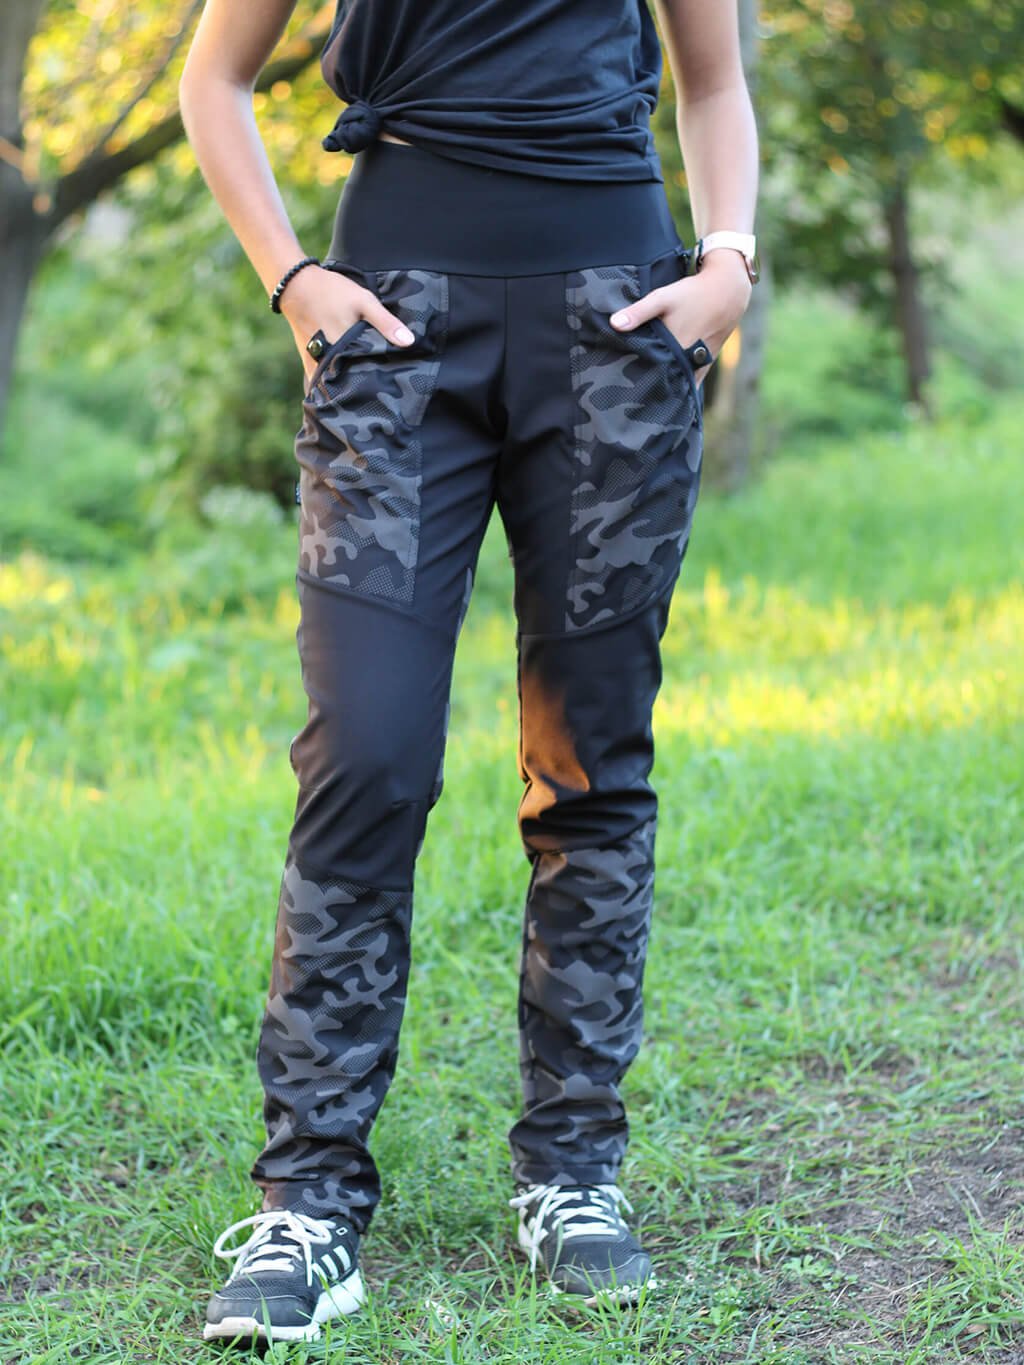 Dámské výcvikové kalhoty ZIMNÍ - černý reflexní maskáč 4dox